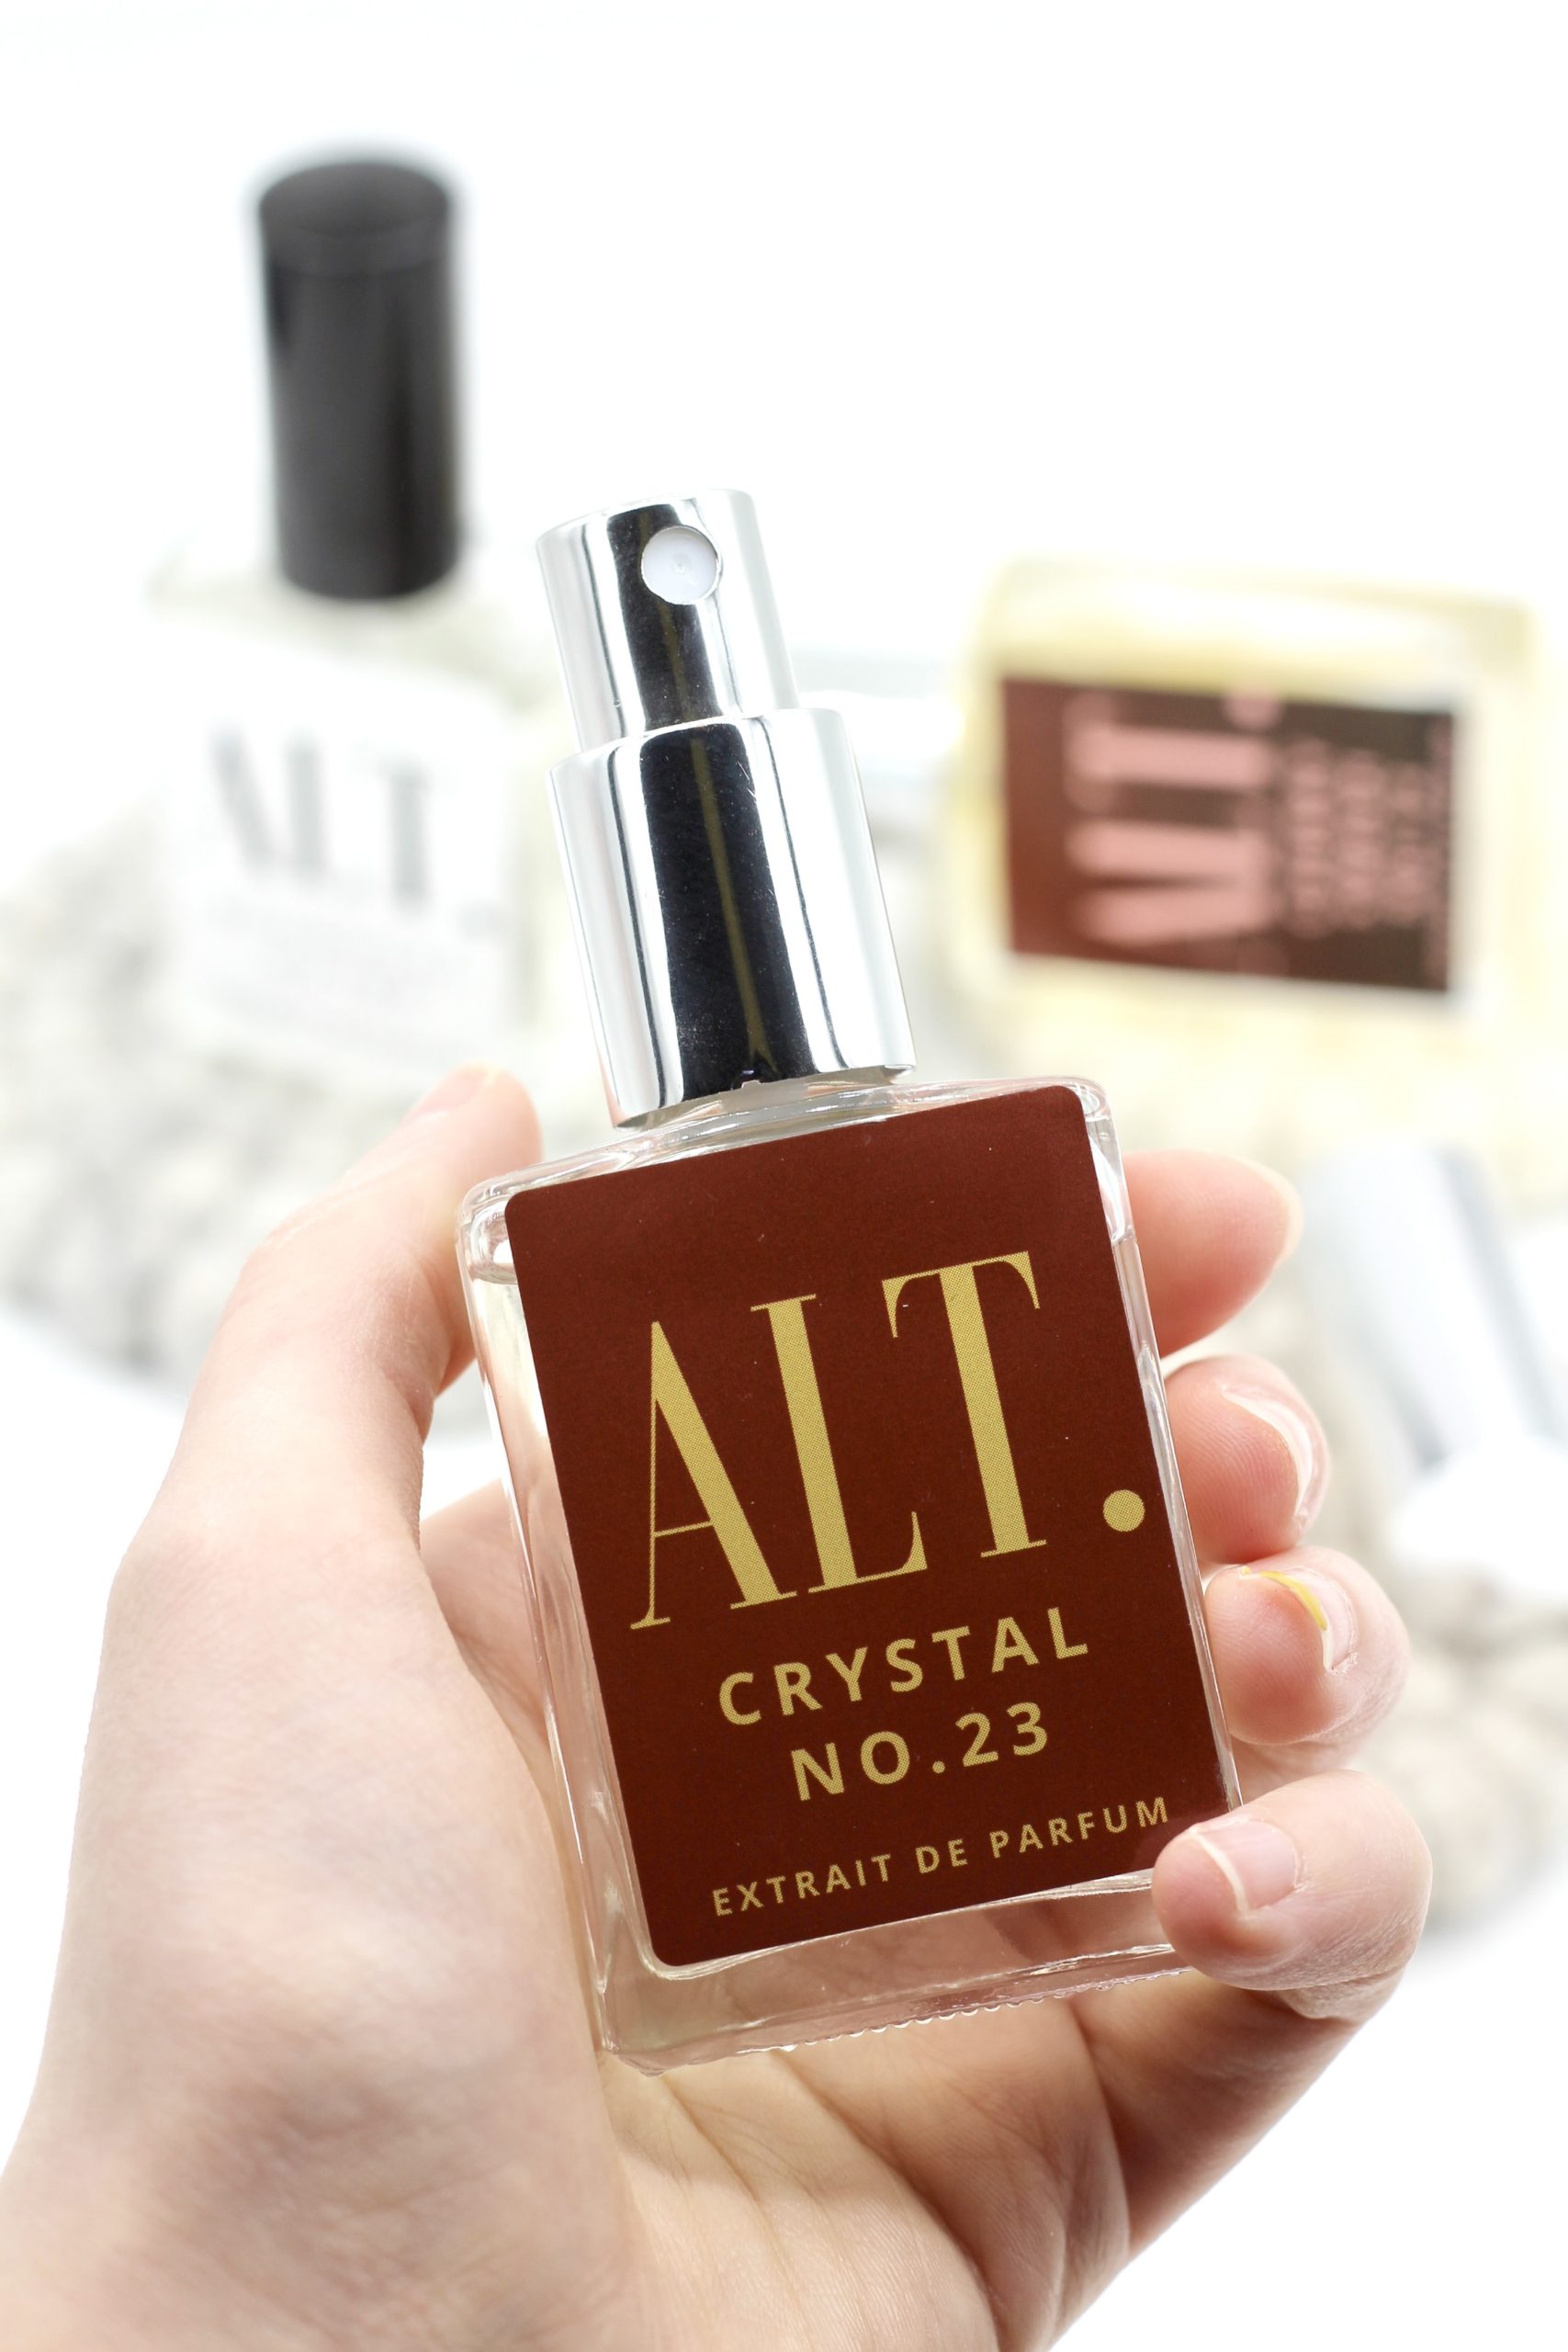 ALT Crystal No. 23 Extrait de parfum review